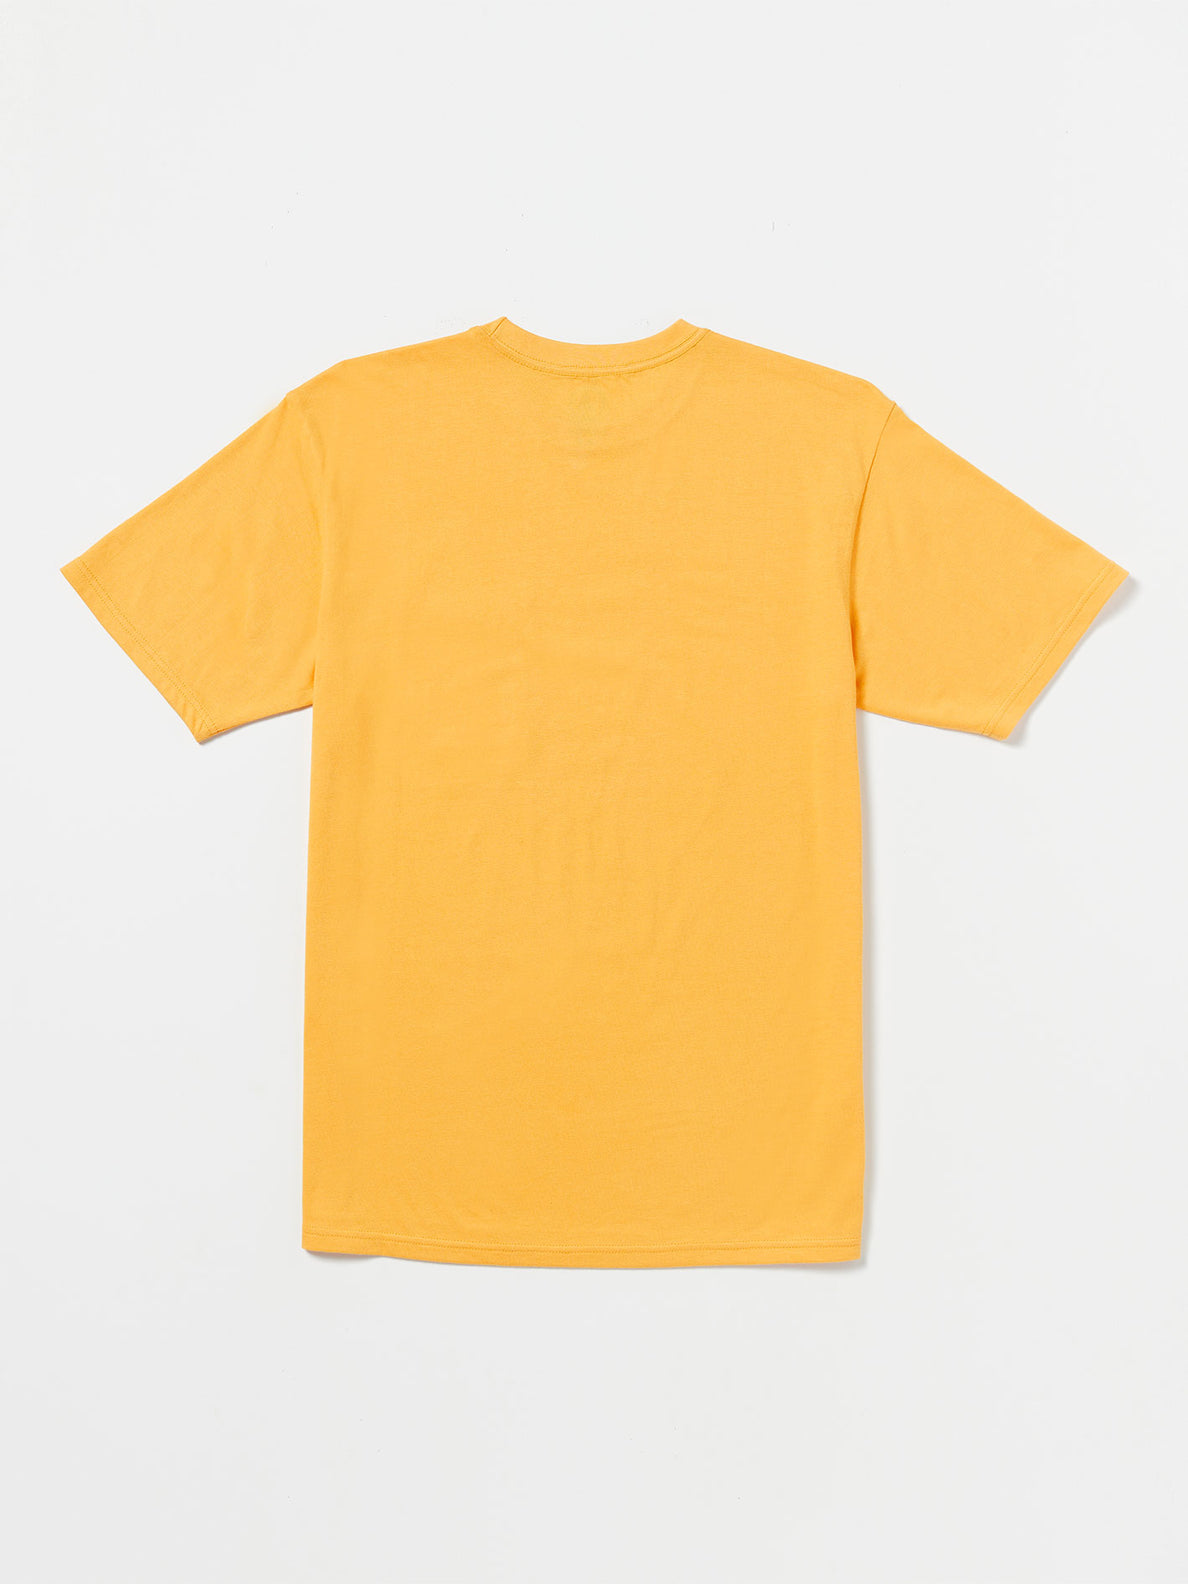 Lolani Crew Short Sleeve Shirt - Bright Marigold